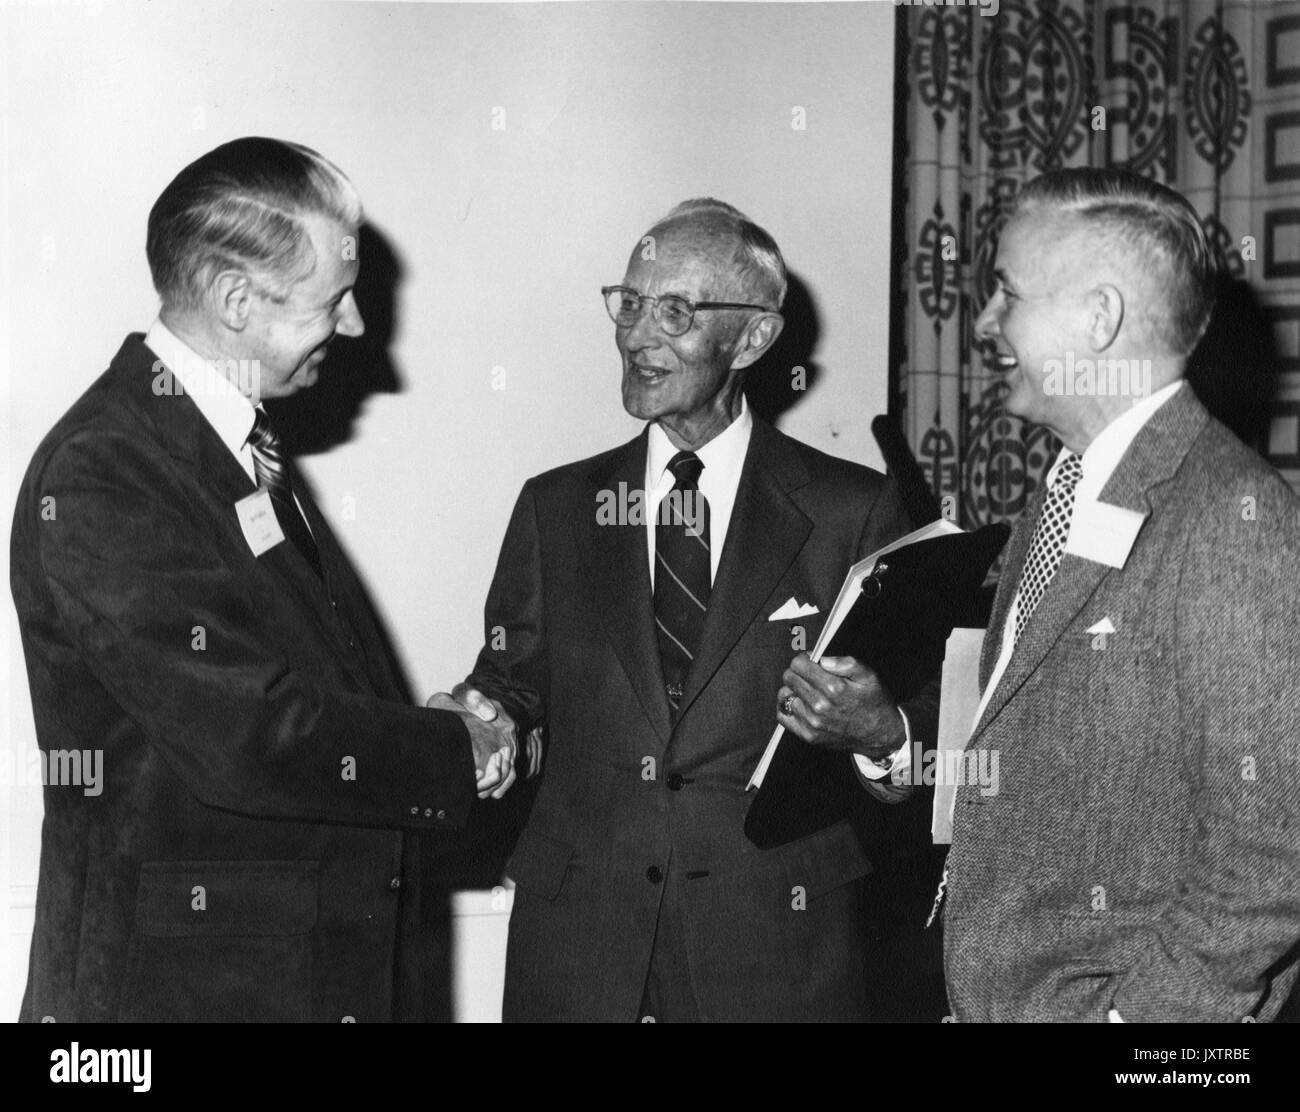 Alonzo Decker, Hays Watkins, Robert Harvery, Kampagne für Johns Hopkins Candid Gruppenbild am Greenbrier, Decker in der Mitte die Hände schütteln mit Watkins, Harvey ist rechts von Decker, 1983. Stockfoto